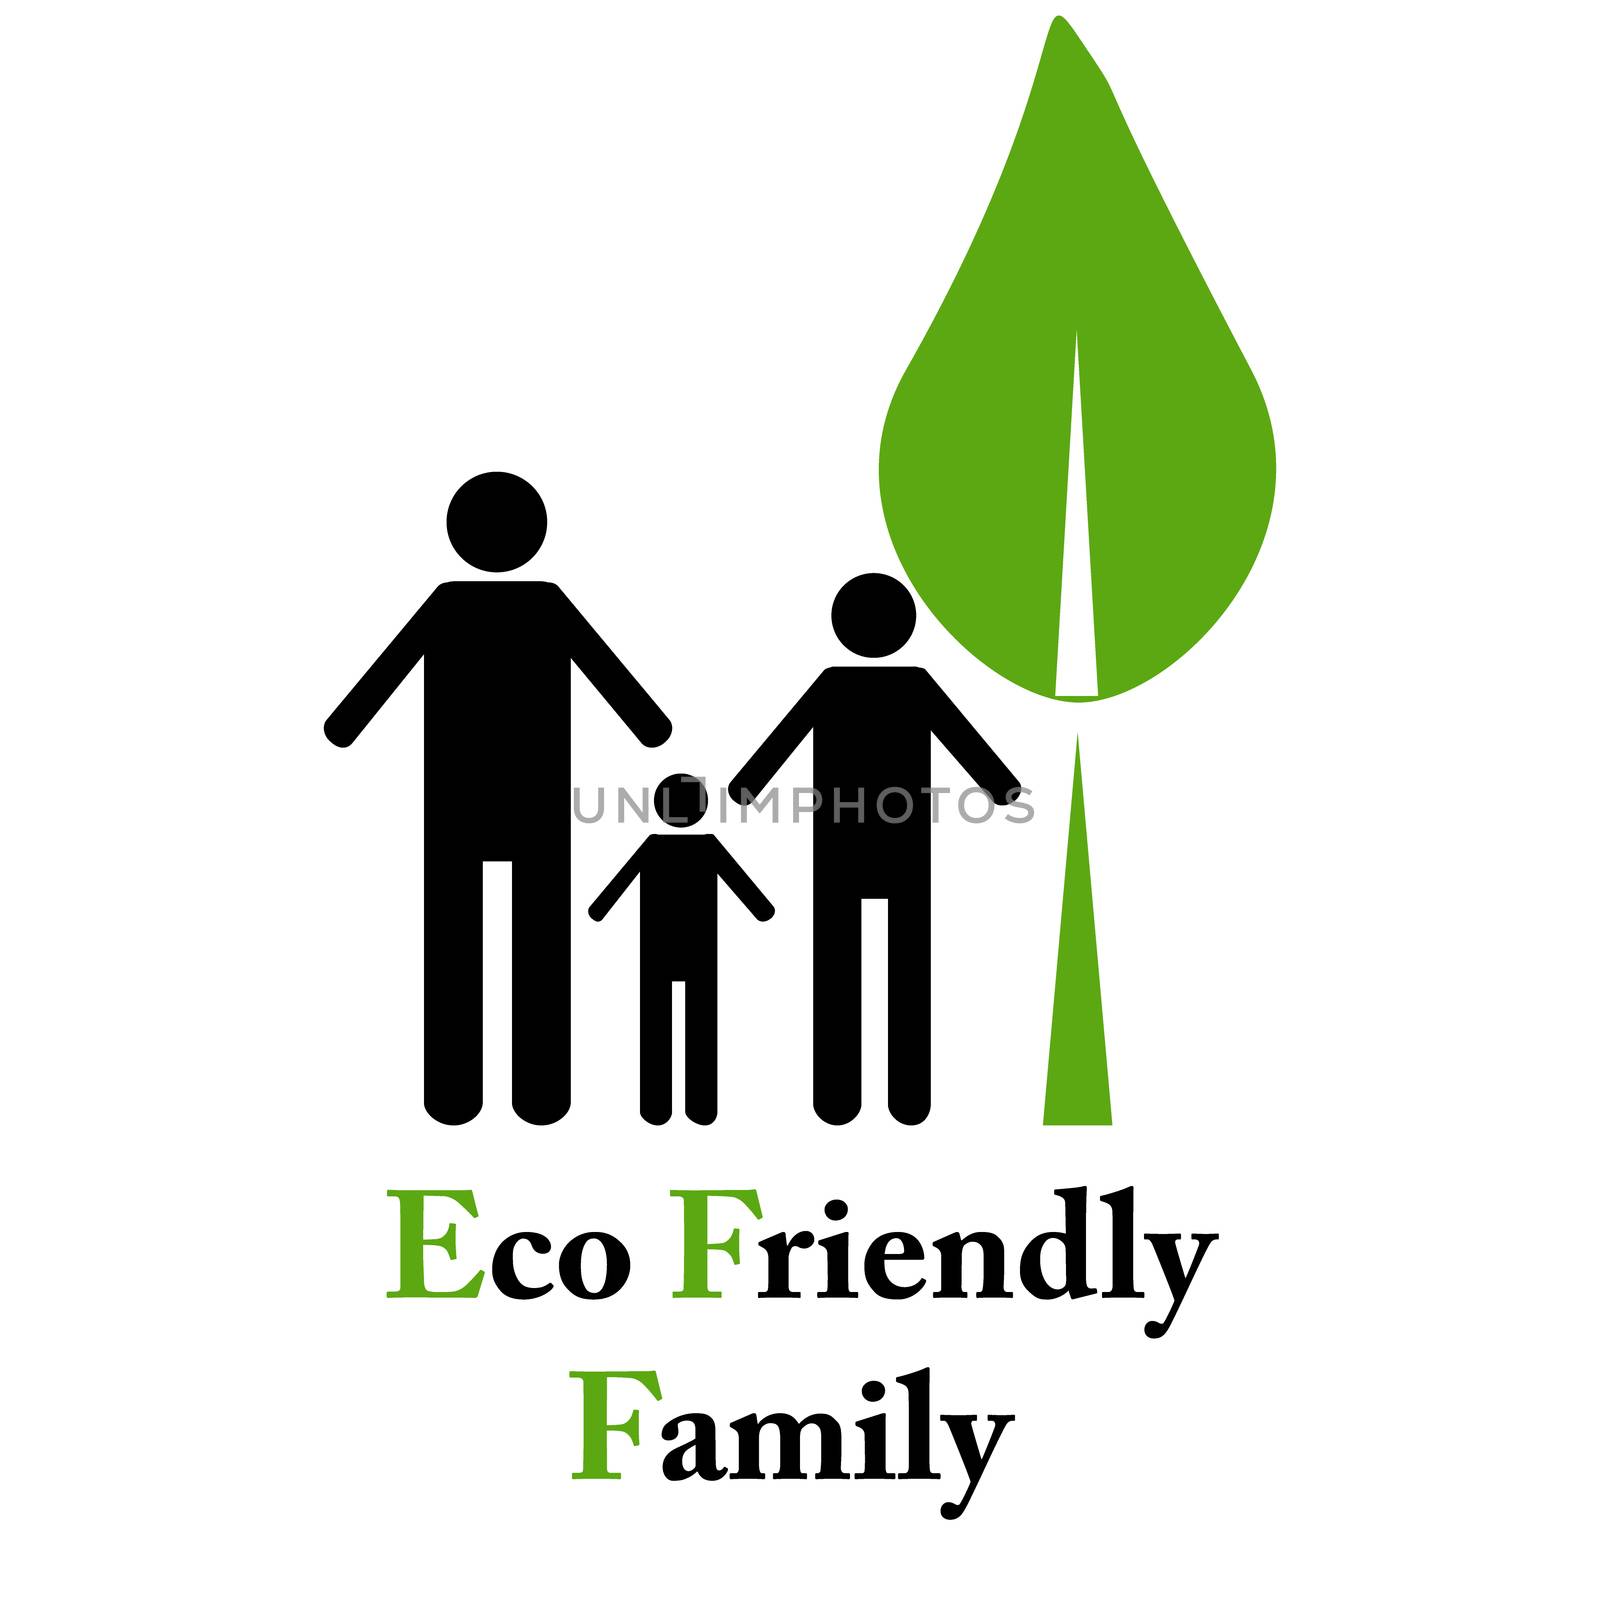 Eco friendly family by rinika